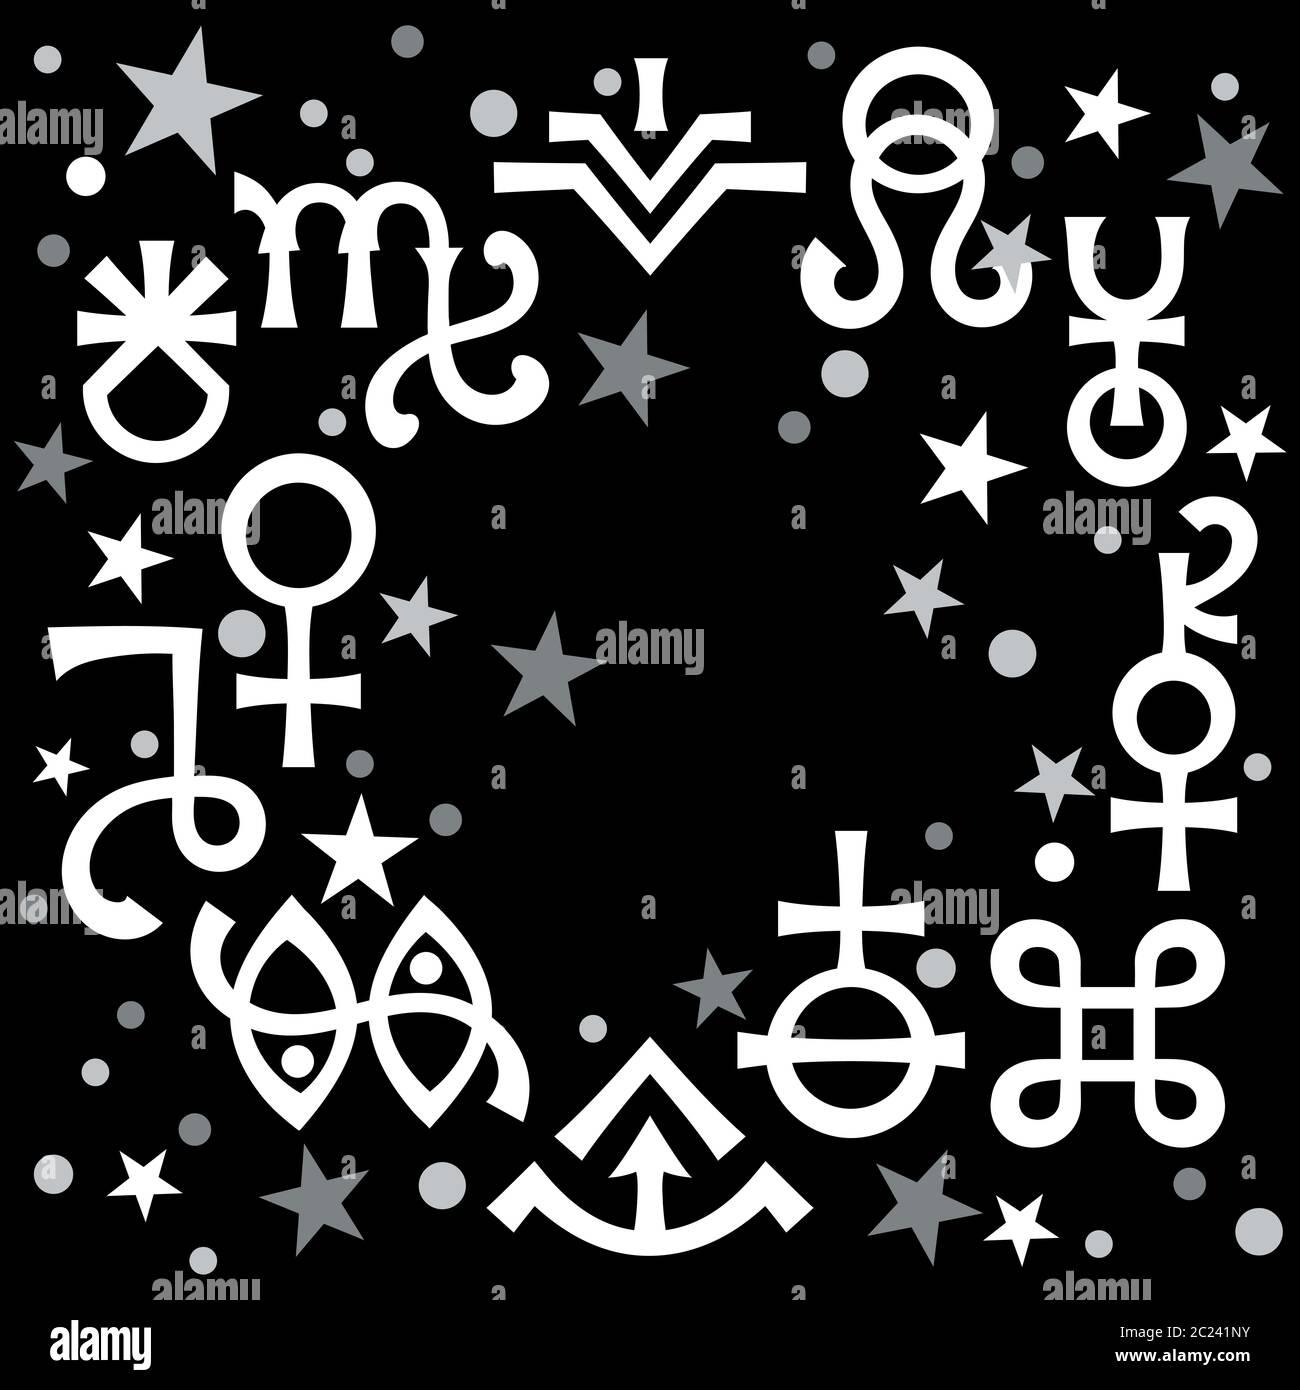 Diadème astrologique (signes astrologiques et symboles mystiques occultes), fond de modèle céleste avec étoiles. Banque D'Images